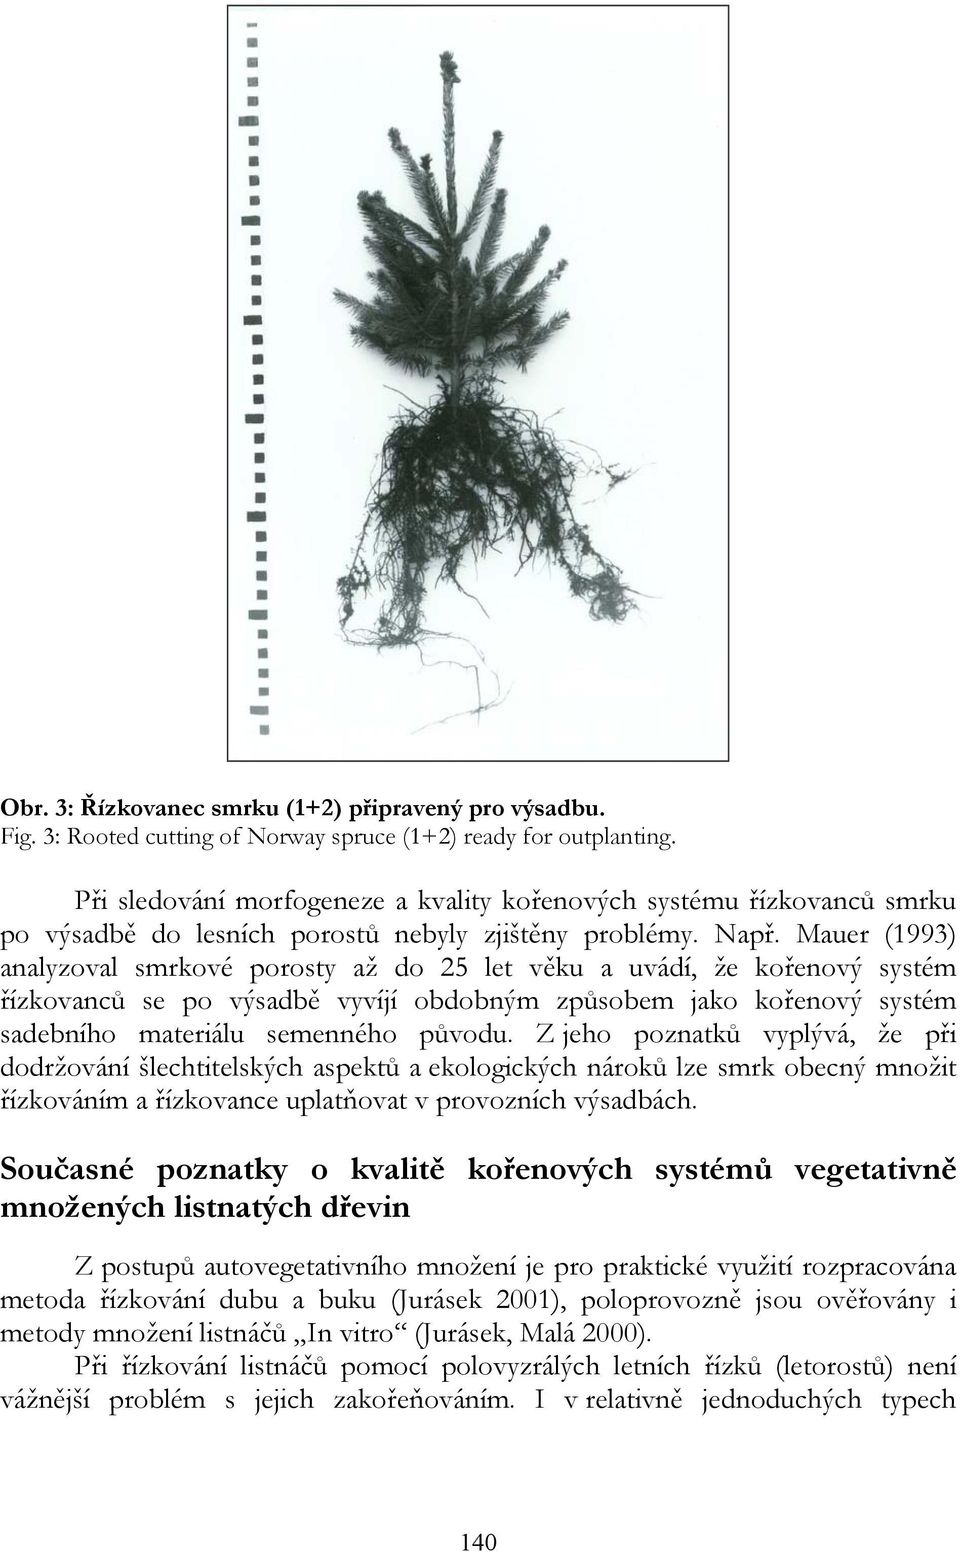 Mauer (1993) analyzoval smrkové porosty až do 25 let věku a uvádí, že kořenový systém řízkovanců se po výsadbě vyvíjí obdobným způsobem jako kořenový systém sadebního materiálu semenného původu.